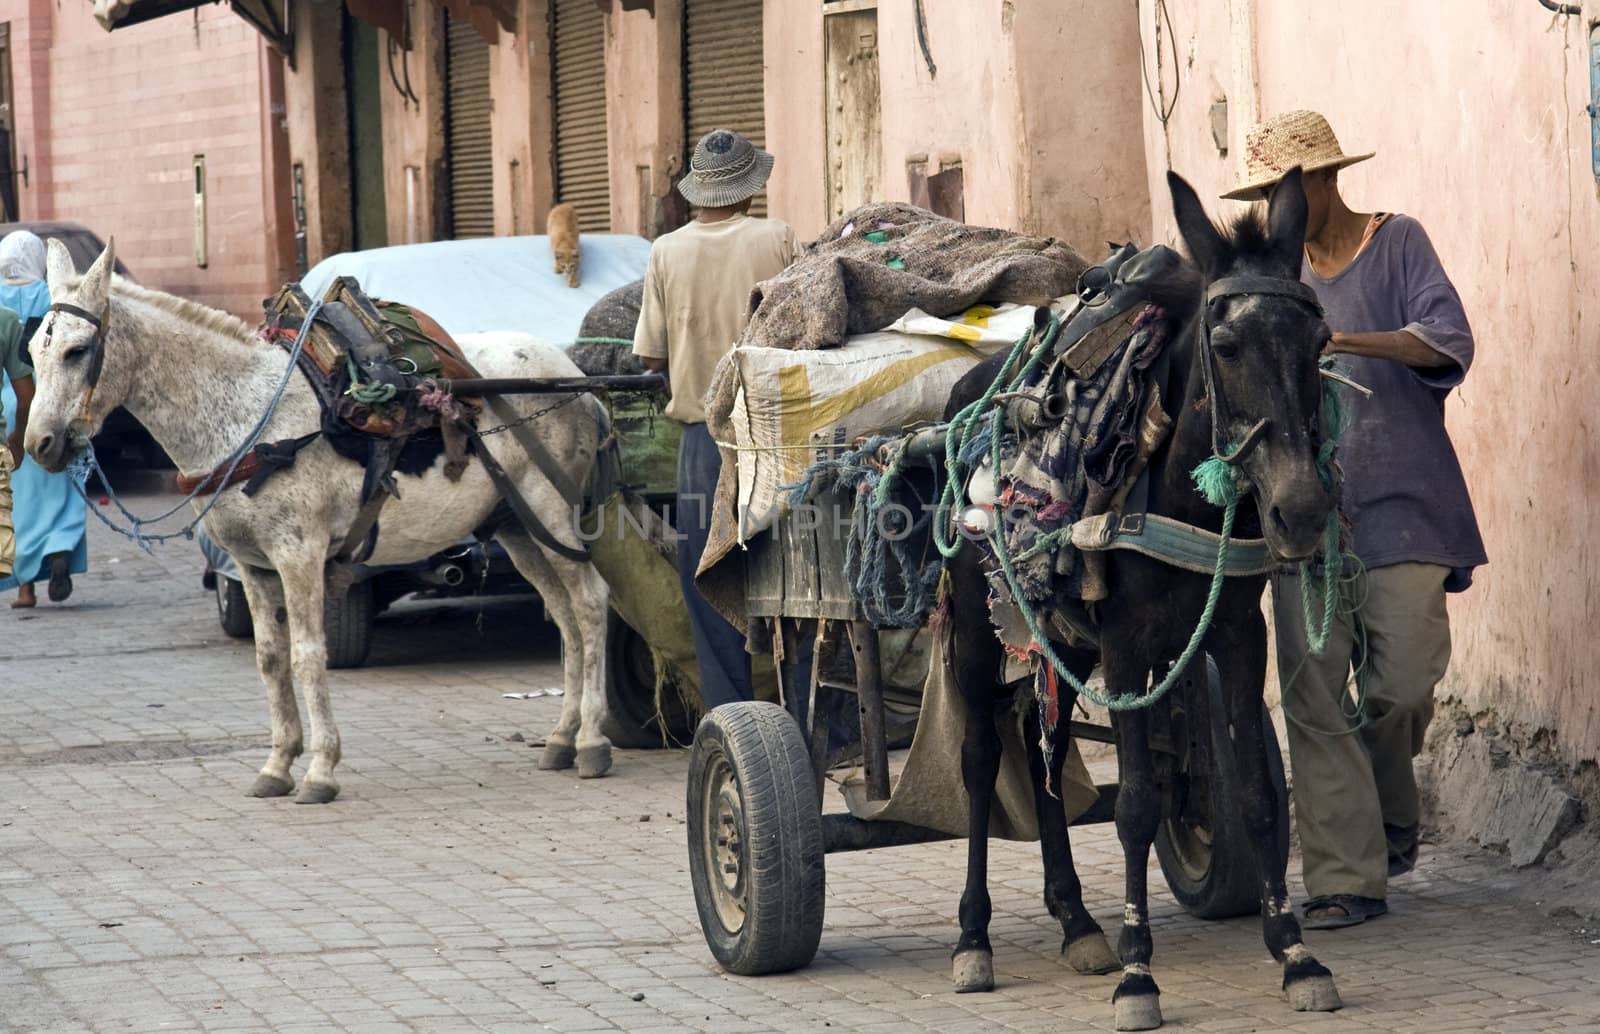 Horse and cart, Marrakech, Morocco by khellon